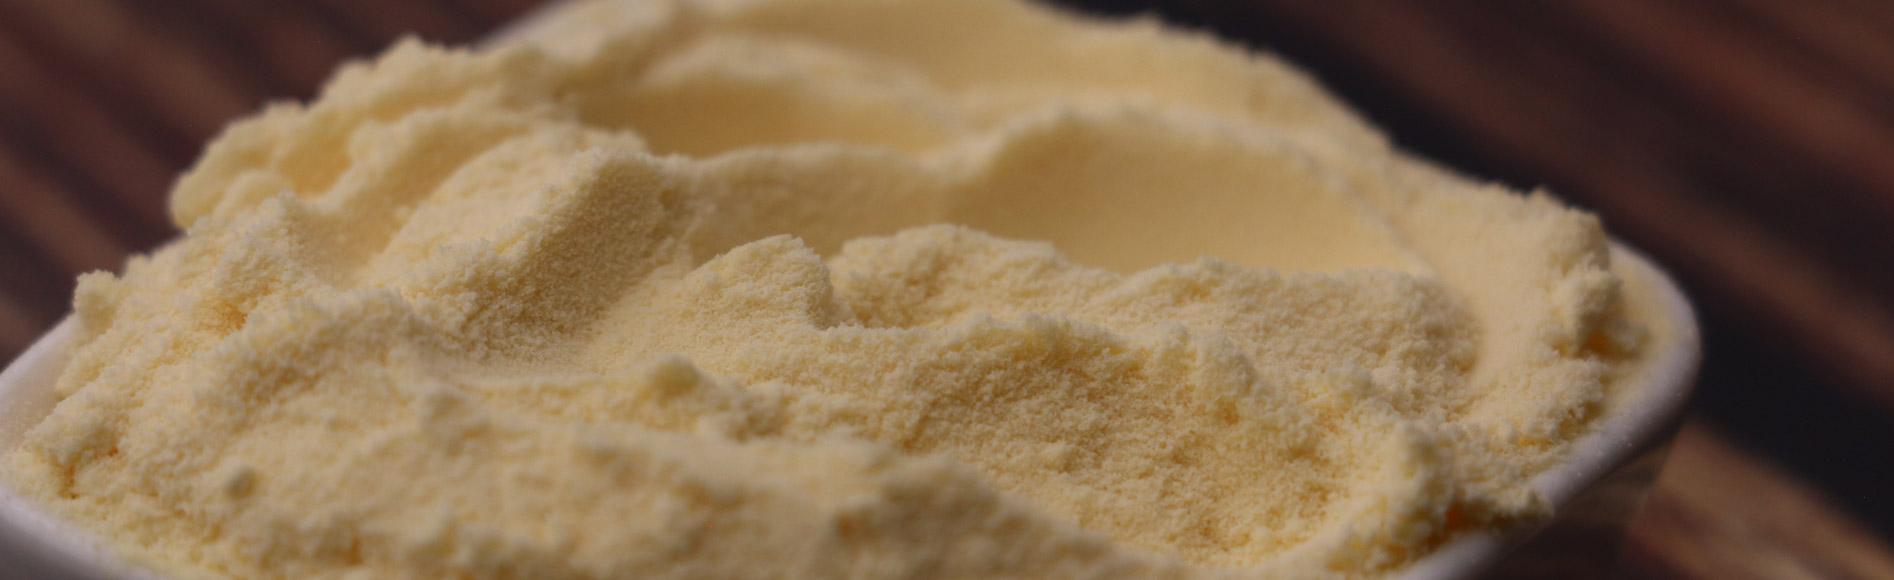 FruiVeg® 弗瑞威格 速溶甜橙粉 具有原料特有色泽